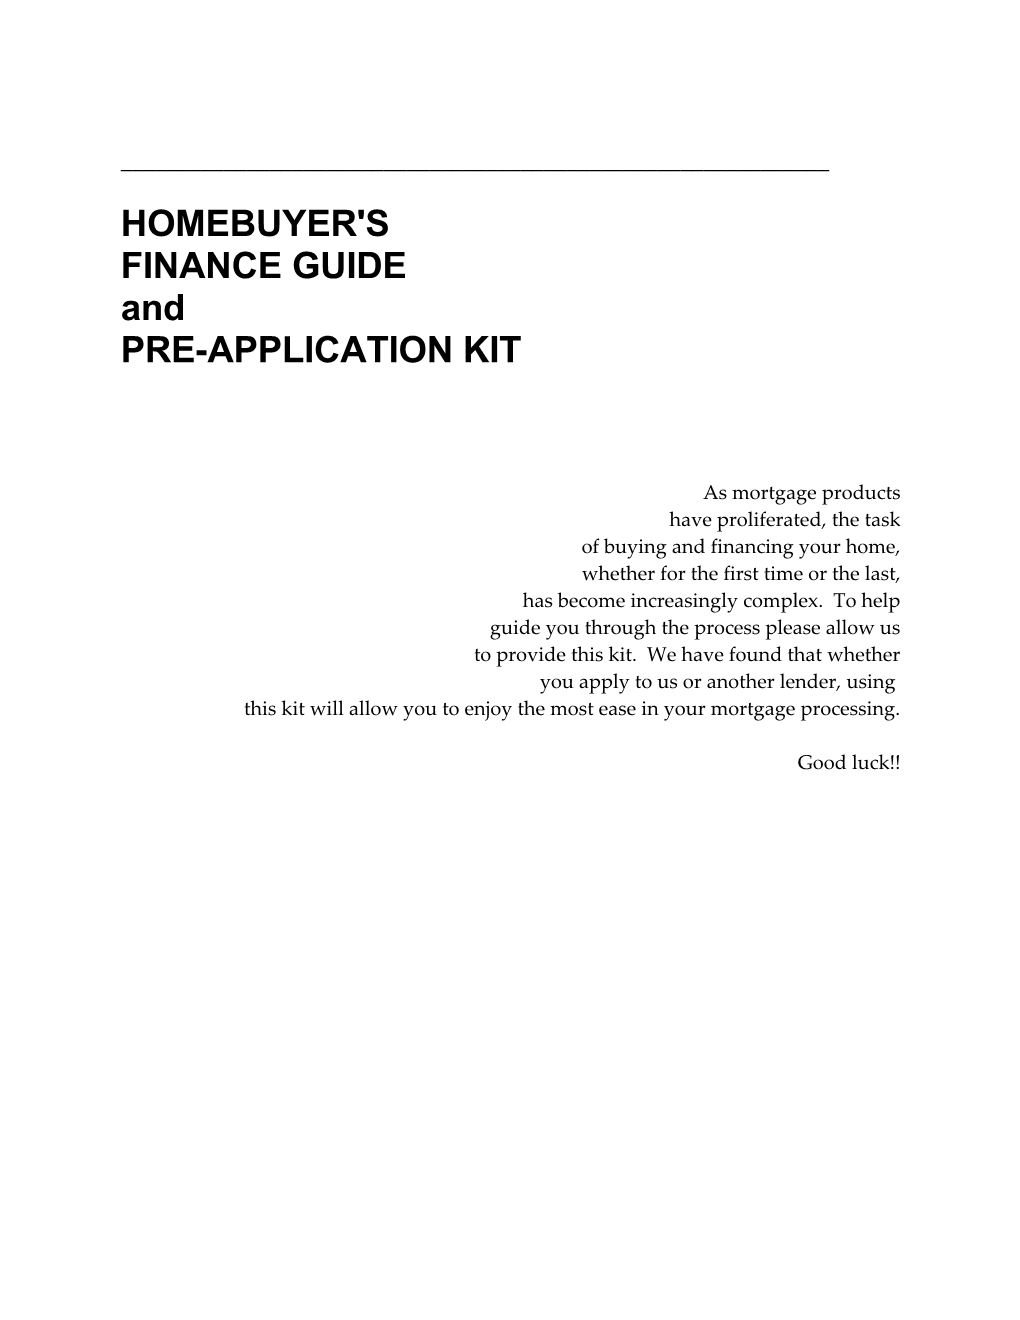 Pre-Application Kit